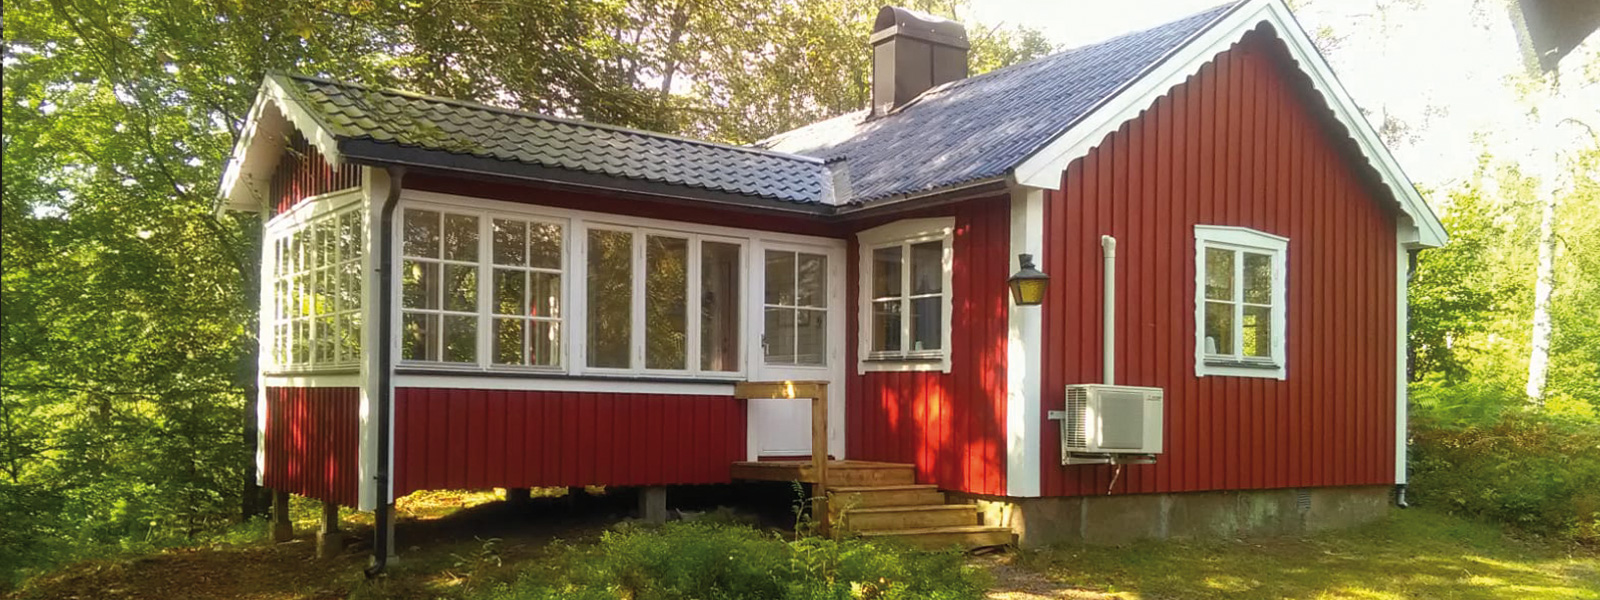 Typisches schwedisches Holzhaus. Göttinnen-Retreat in Südschweden, Meditation, Yoga, Entspannung